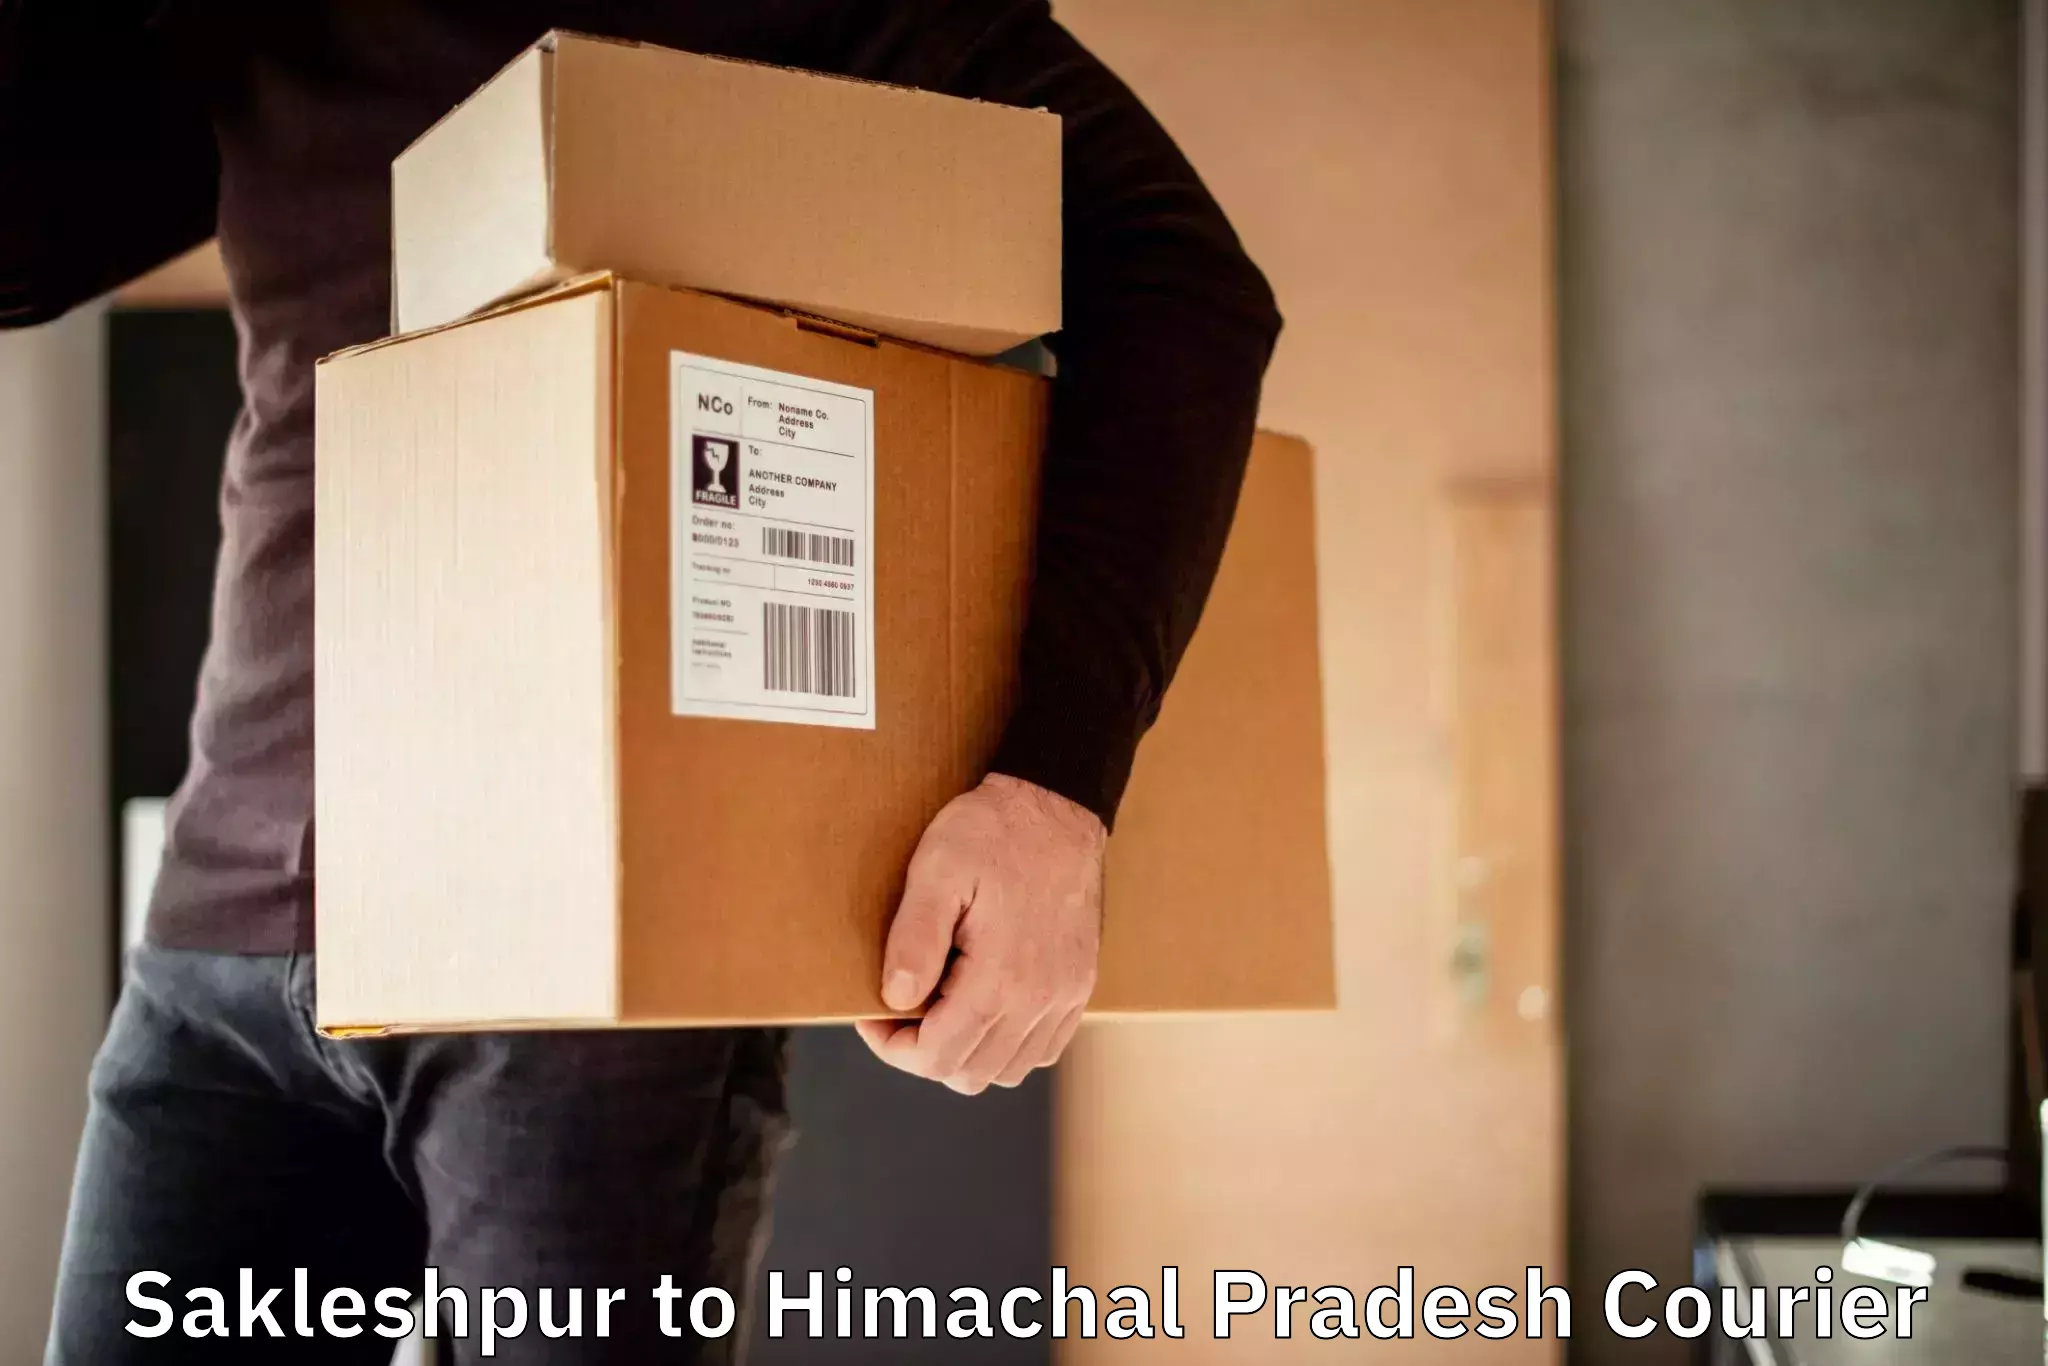 Express shipping Sakleshpur to Bilaspur Himachal Pradesh